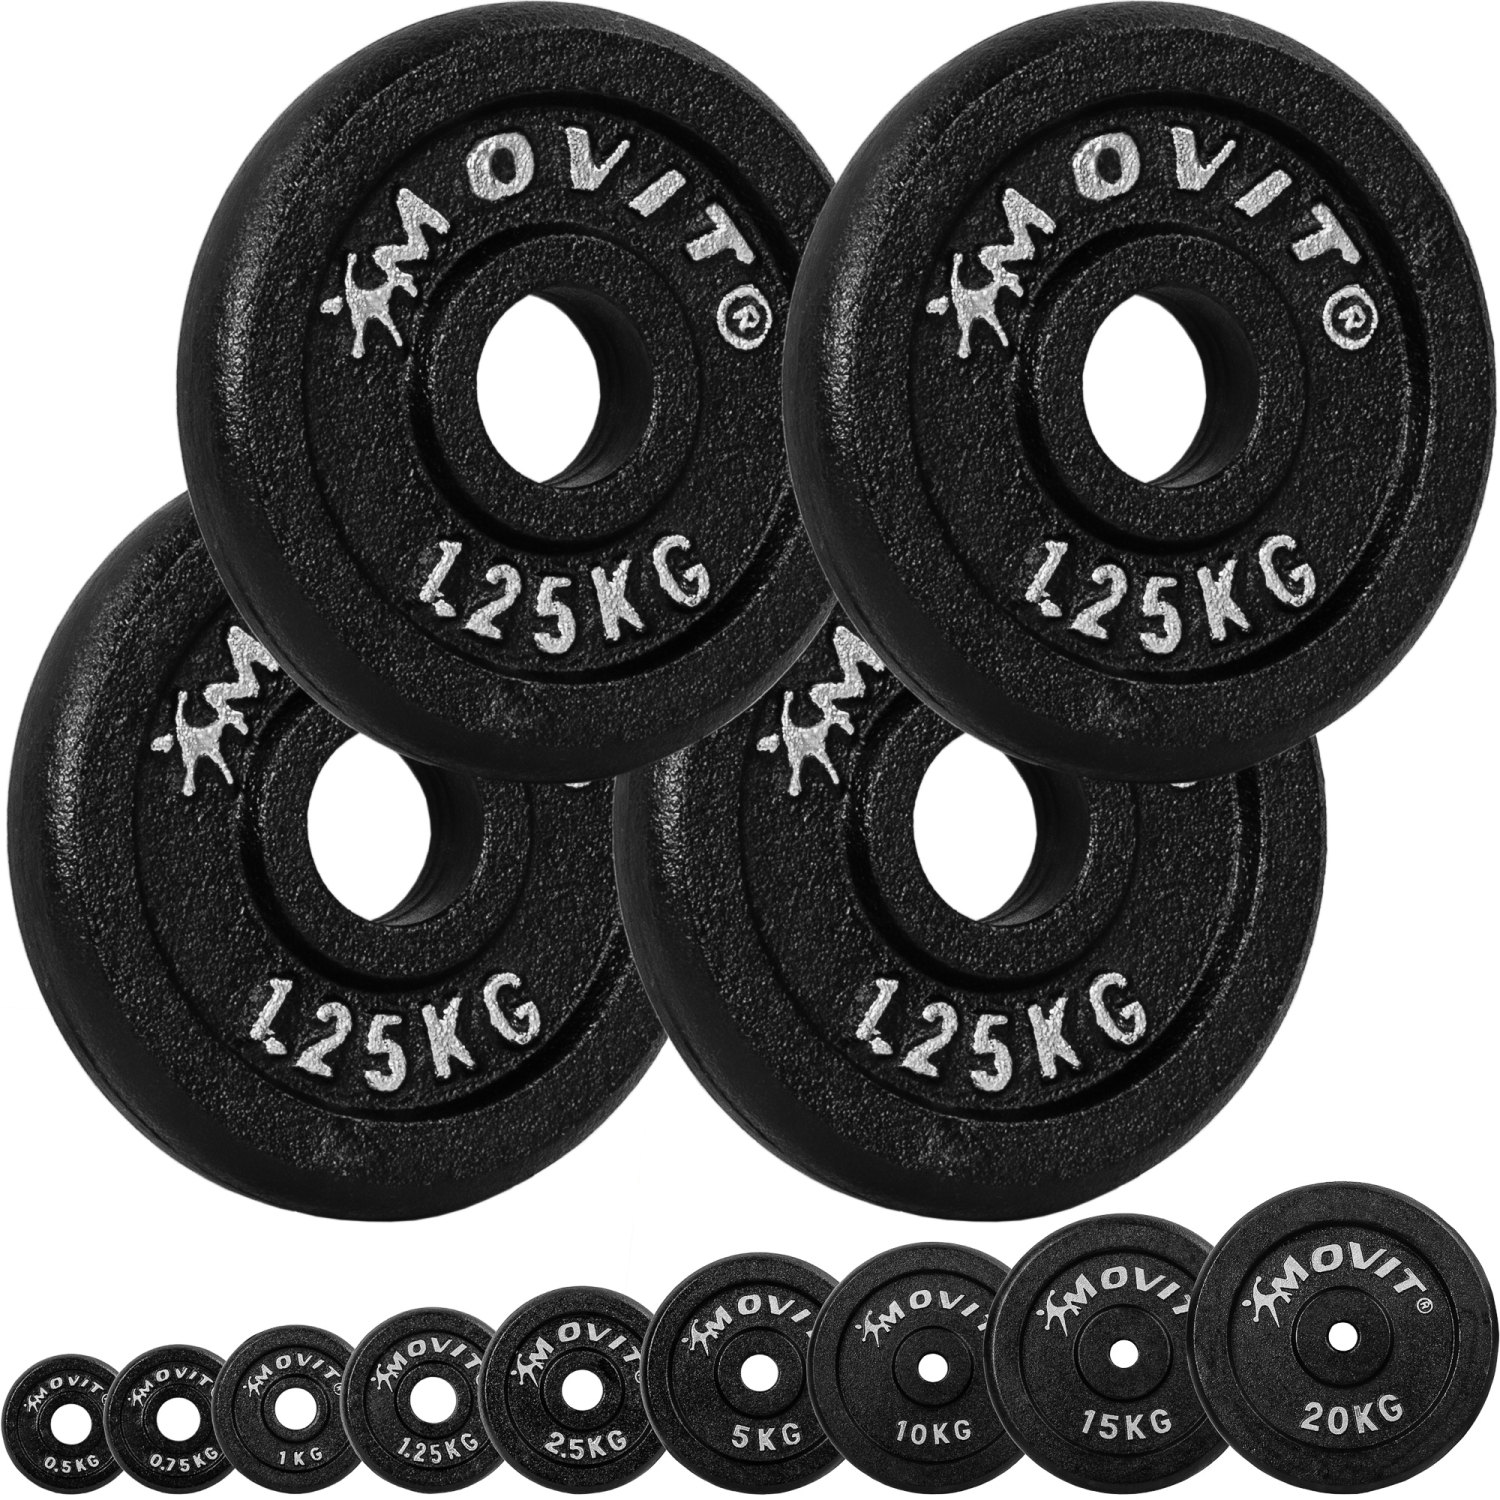 Gewichten set – Voor fitness – Schijven – 30/31 mm – 4x 1.25 kg – Zwart